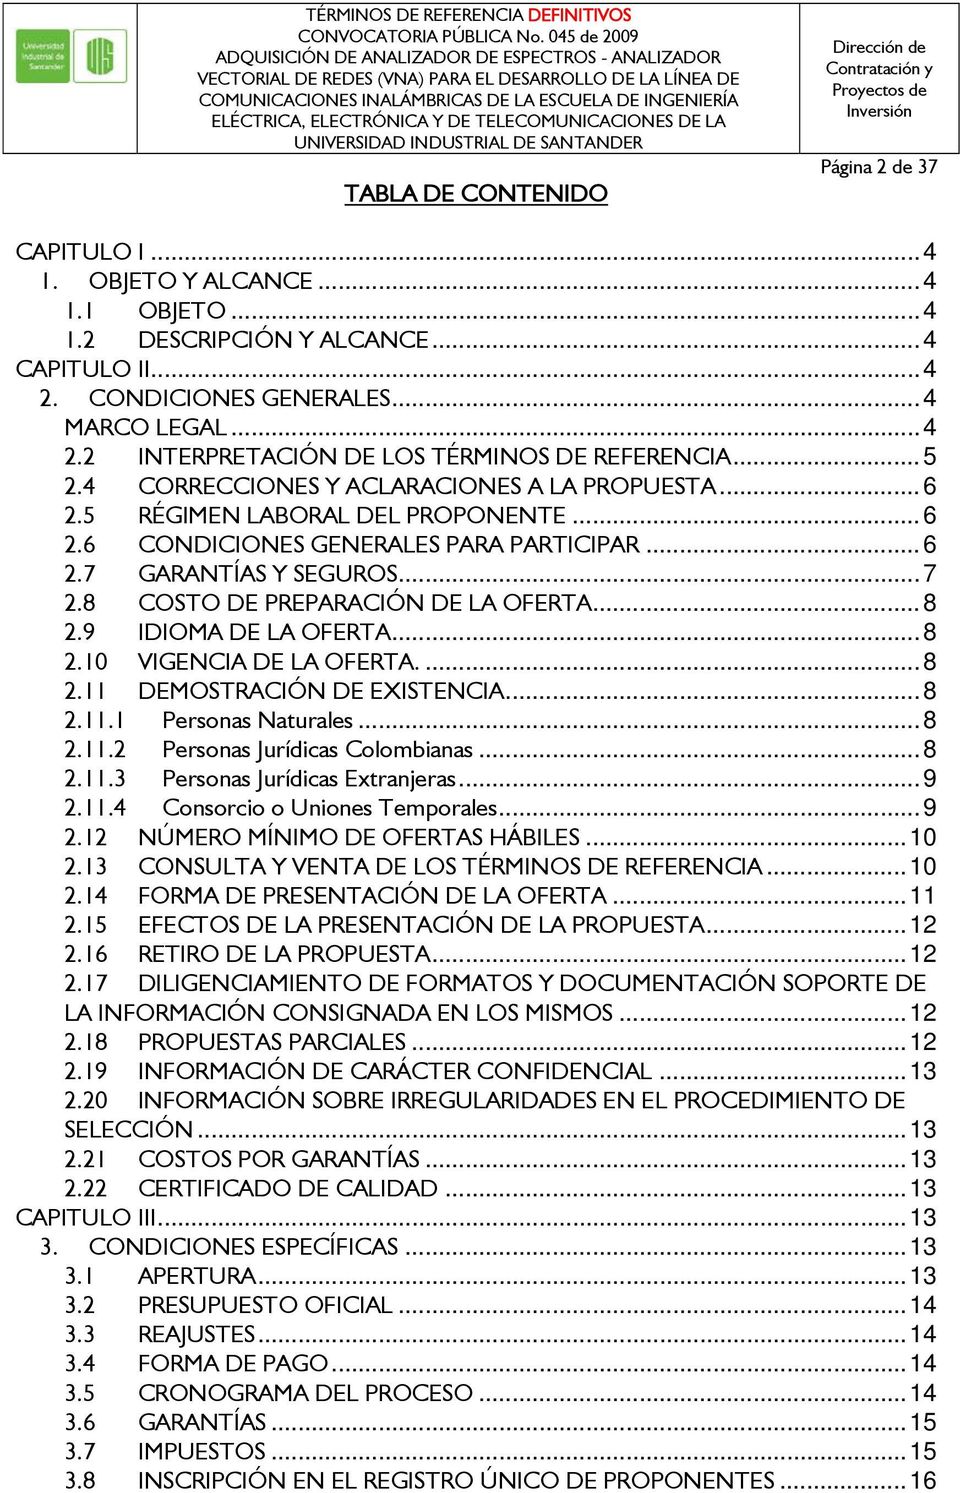 8 COSTO DE PREPARACIÓN DE LA OFERTA... 8 2.9 IDIOMA DE LA OFERTA... 8 2.10 VIGENCIA DE LA OFERTA.... 8 2.11 DEMOSTRACIÓN DE EXISTENCIA... 8 2.11.1 Personas Naturales... 8 2.11.2 Personas Jurídicas Colombianas.